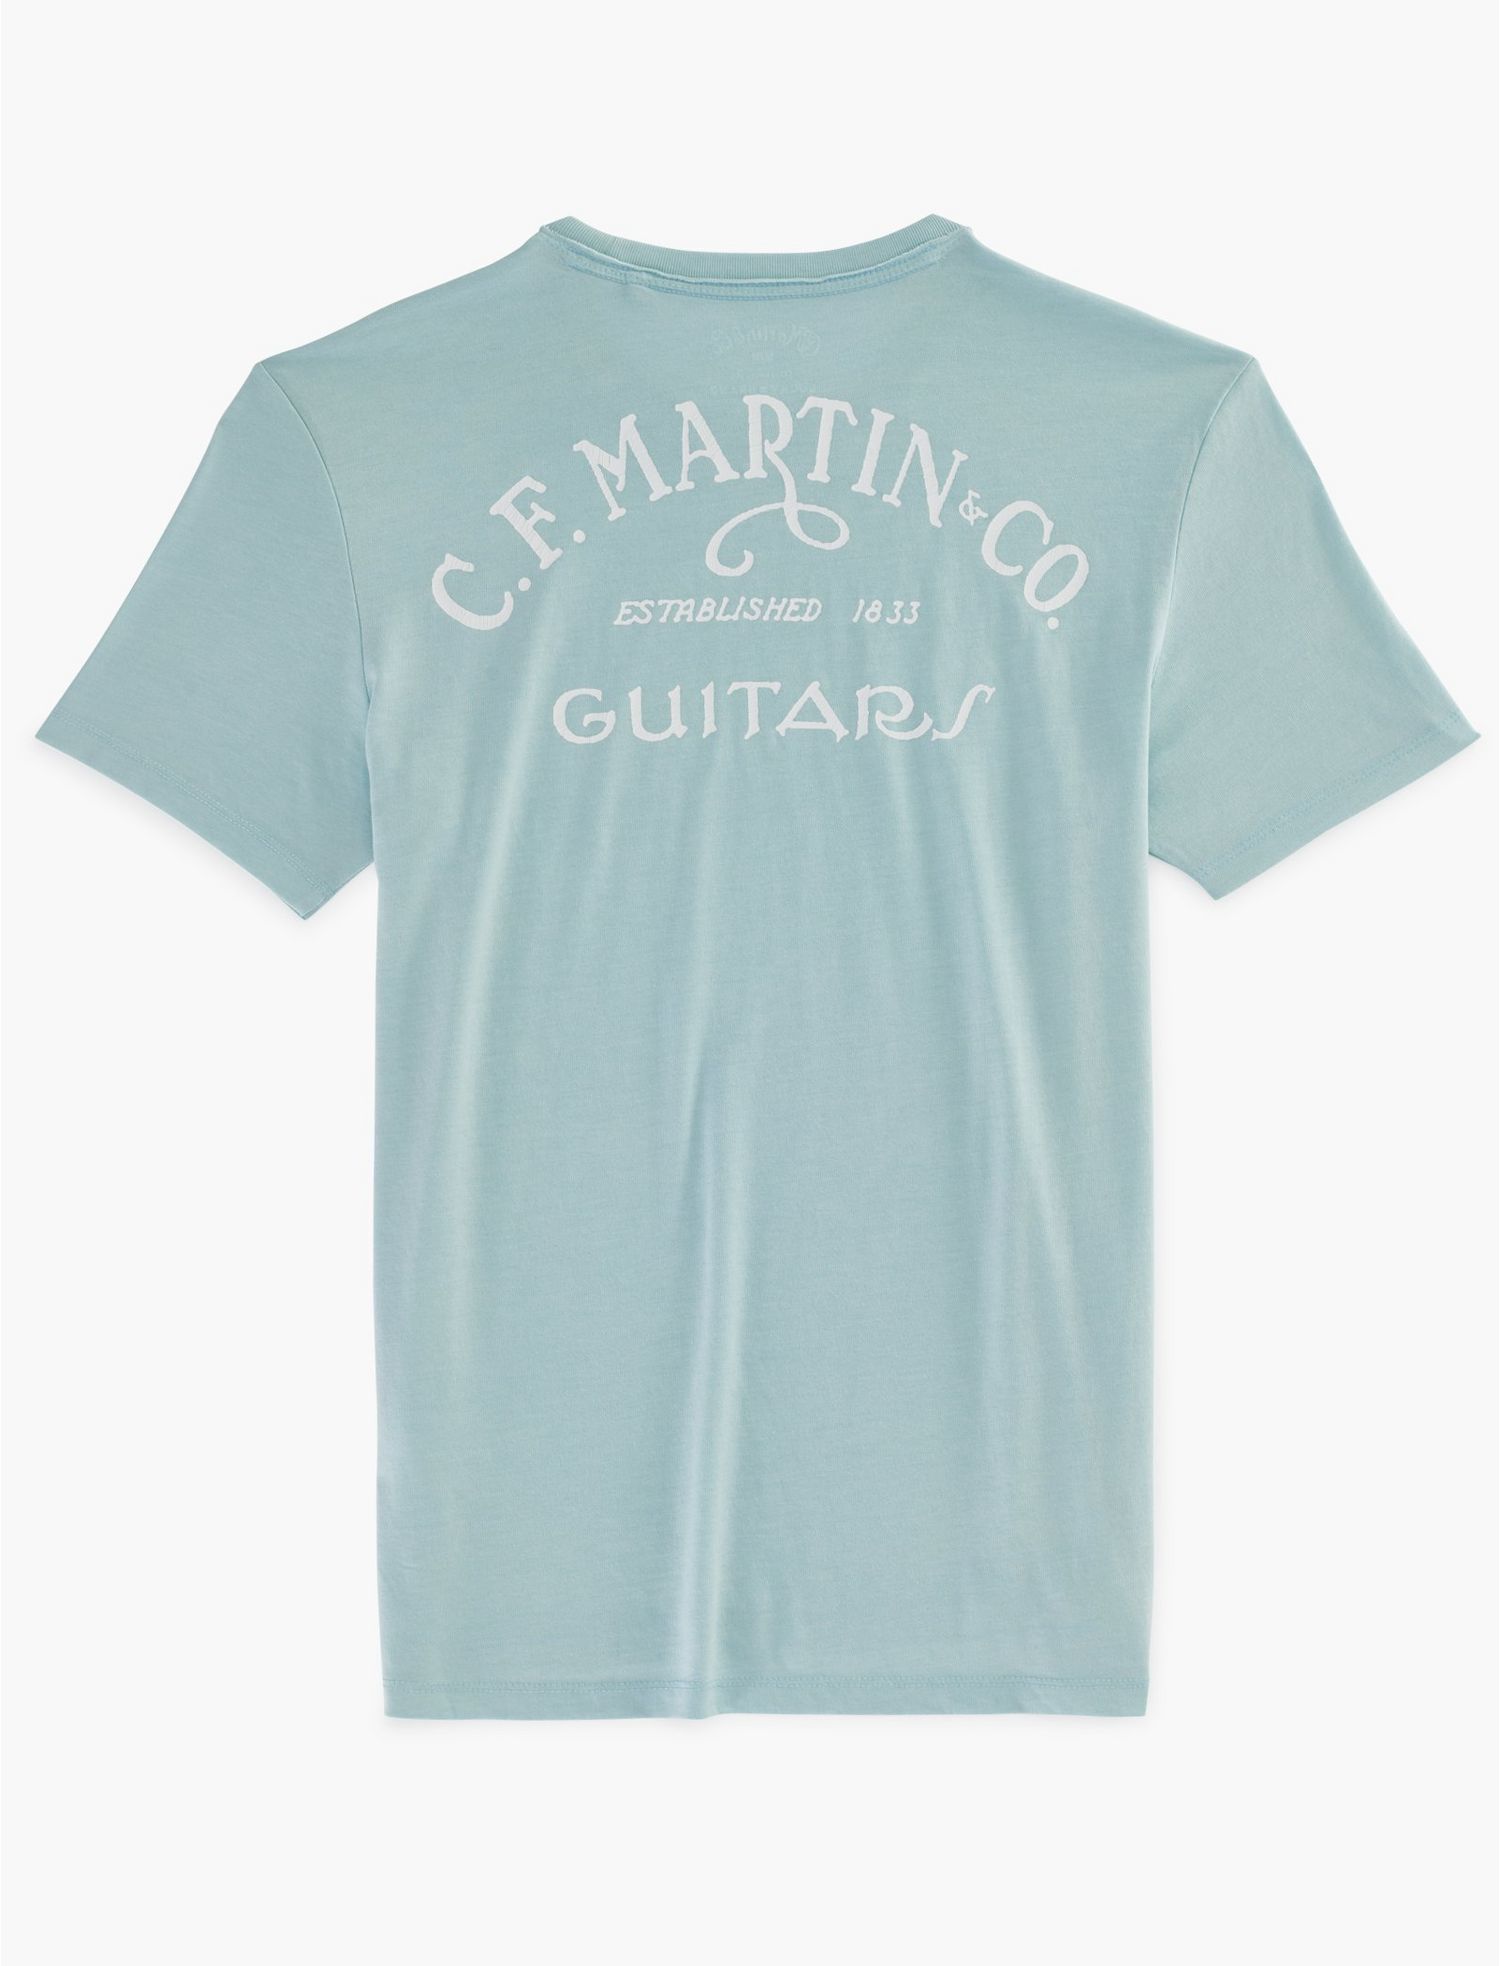 Lucky Brand Martin T-Shirt - Tony's Tuxes and Clothier for MenTony's Tuxes  and Clothier for Men